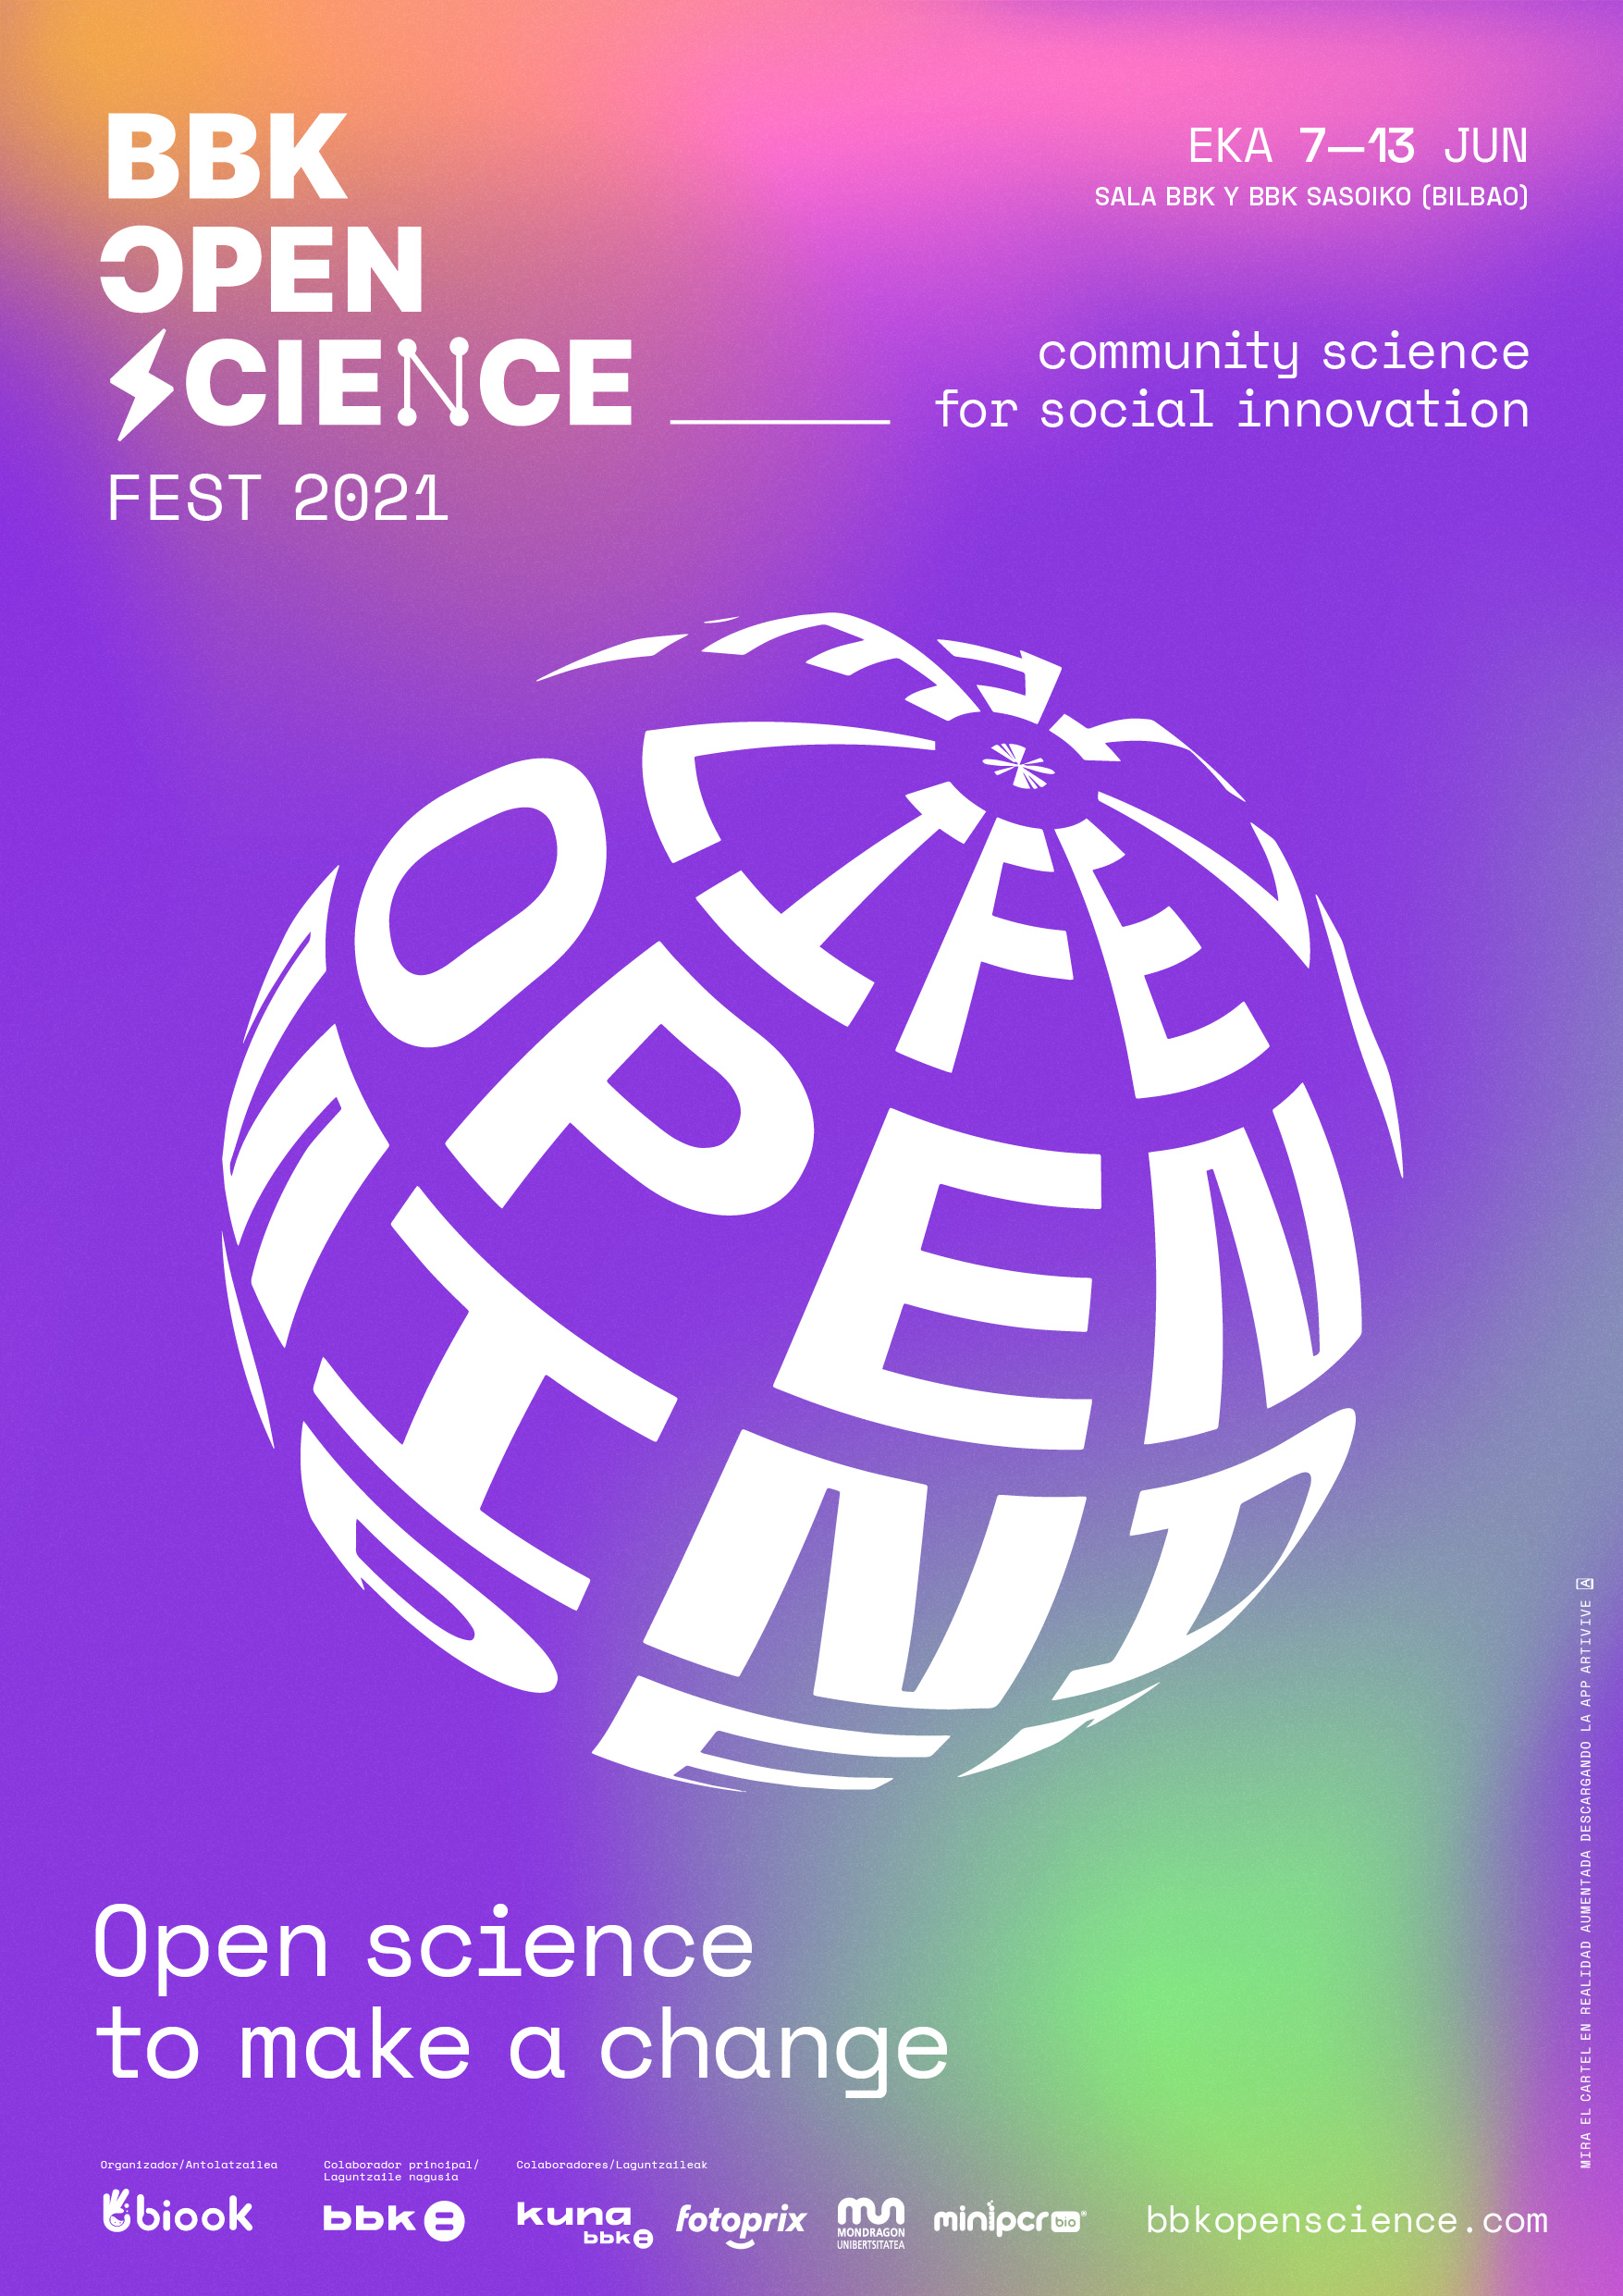 BBK Open Sciene Fest 2021 by Hermes Grau, Clara Briones, Antton Ugarte - Creative Work